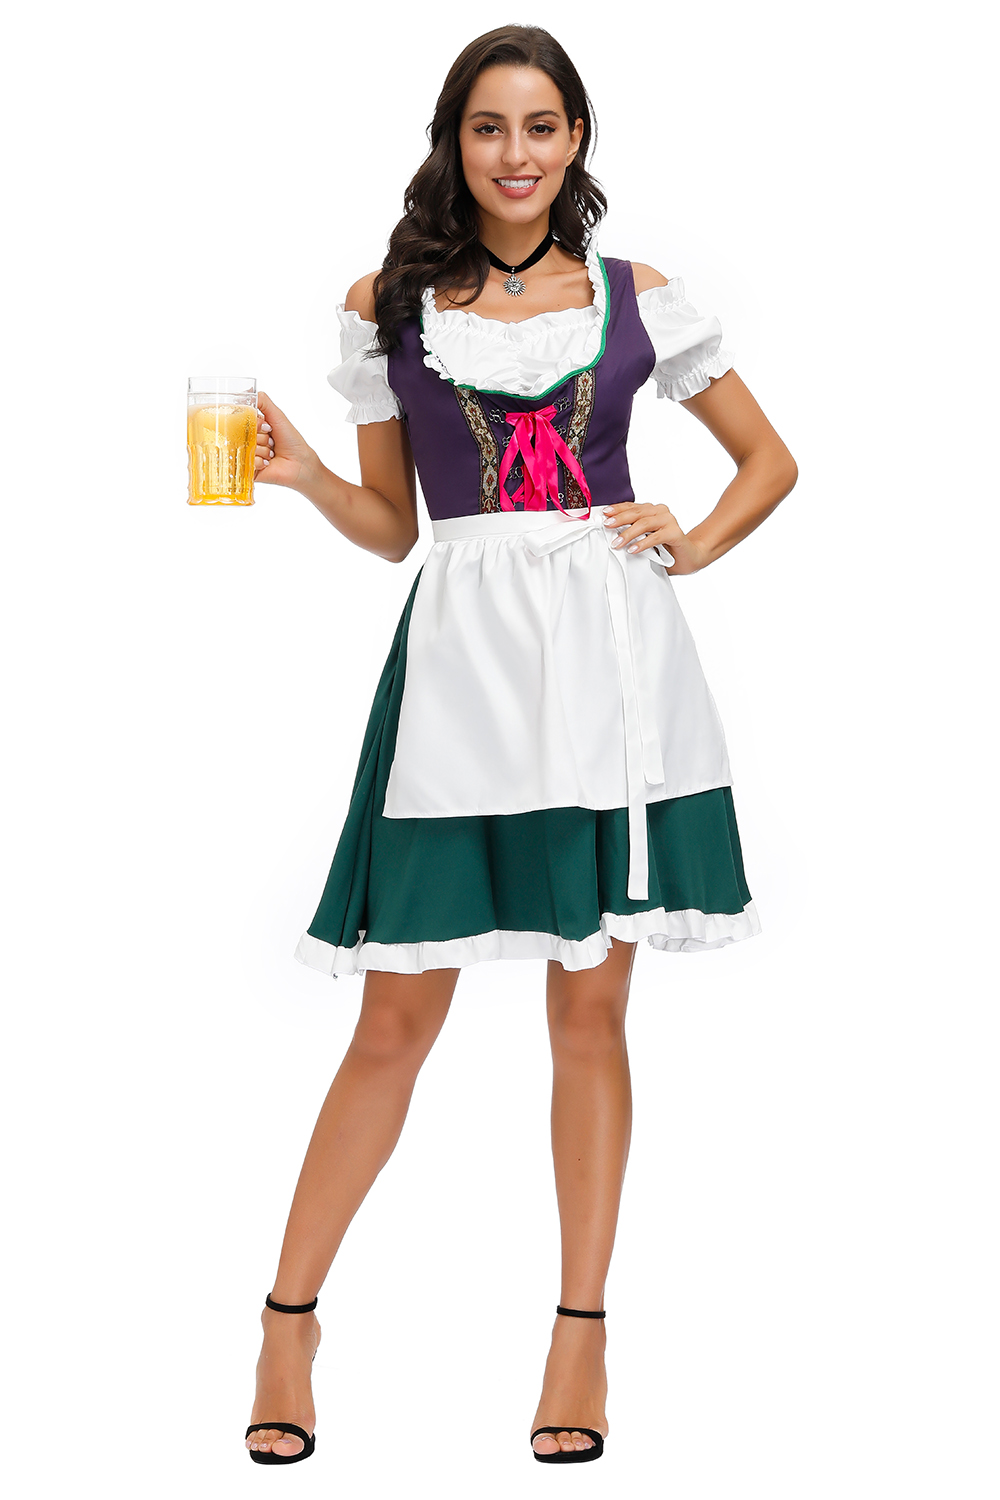 Bavarian Beer Maid Adult Costume